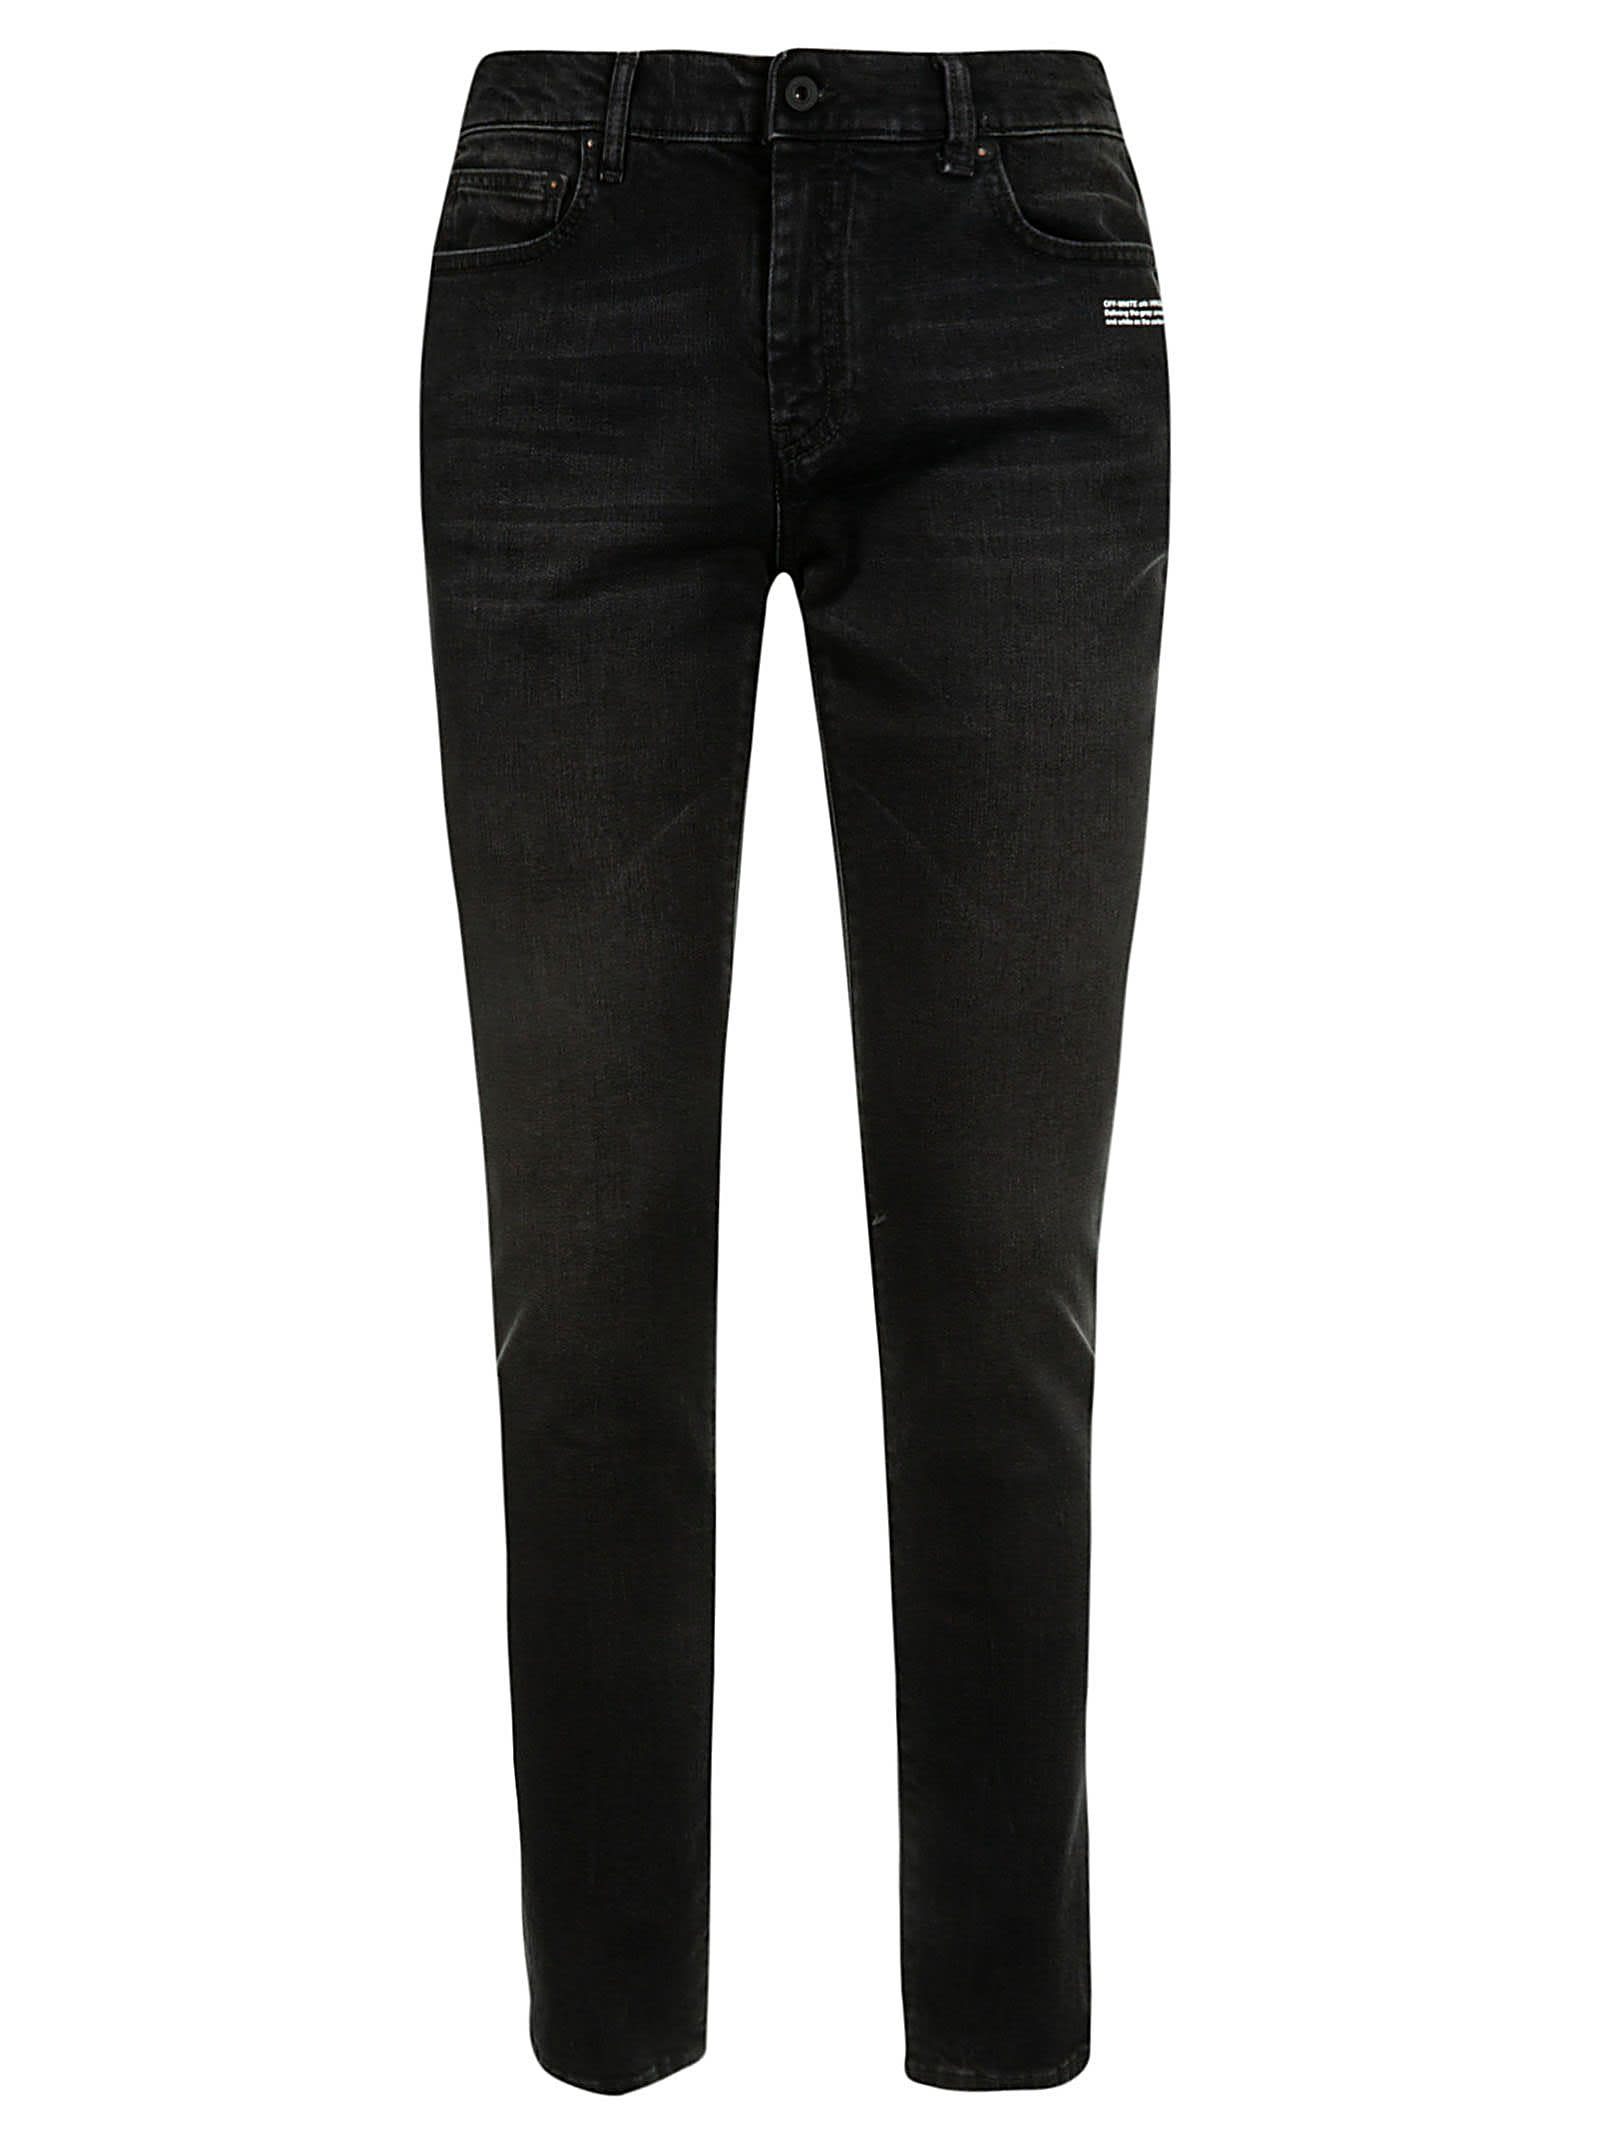 Off-white Skinny Regular Length Jeans In Black/white